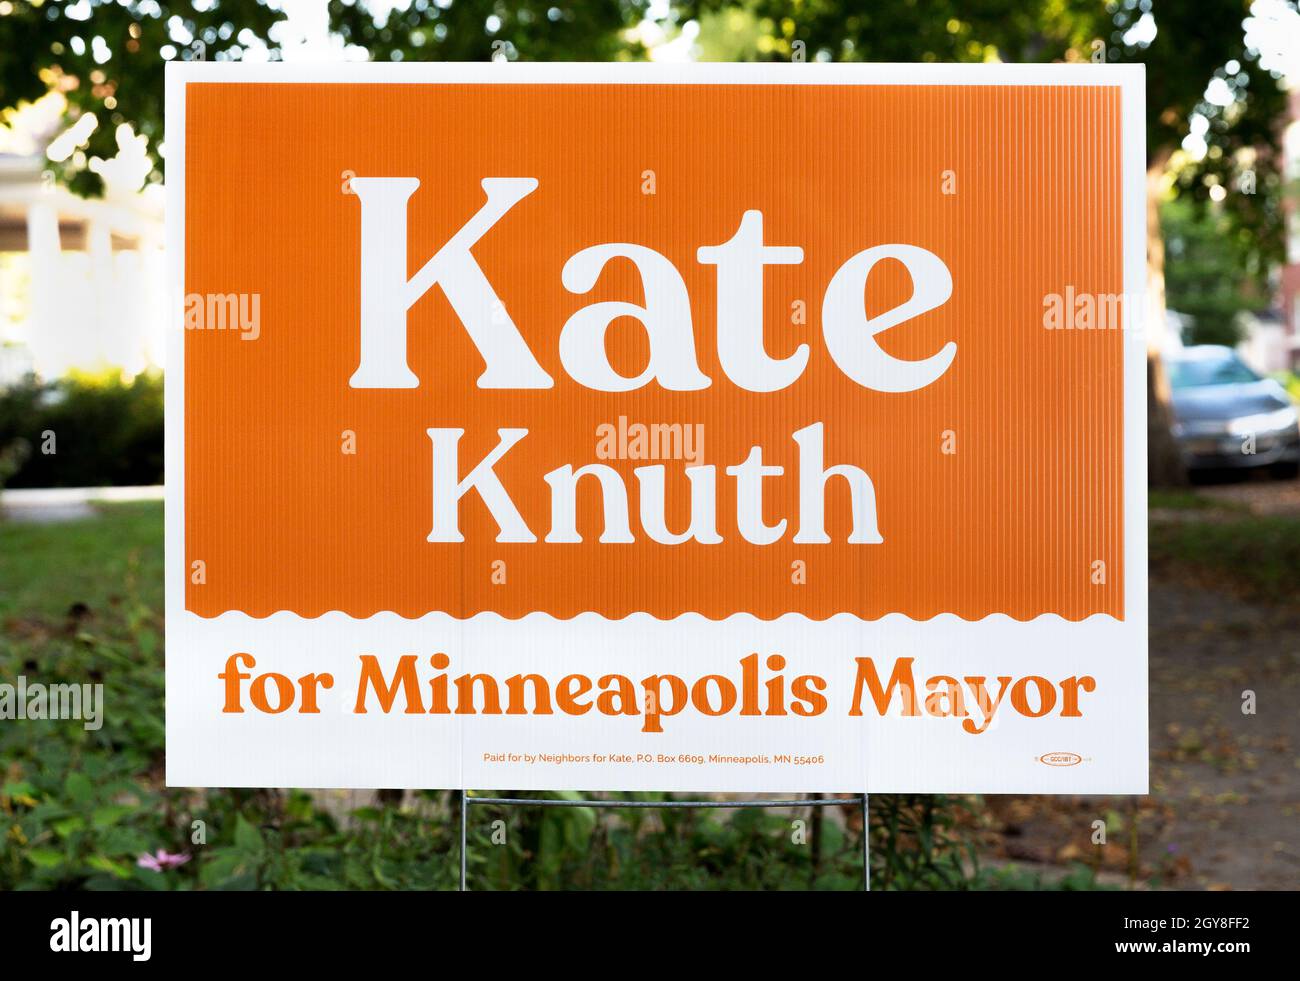 Un cartello politico di quartiere con colori arancio e bianco che approva l'elezione del democratico Kate Knuth per il sindaco di Minneapolis, Minnesota Foto Stock